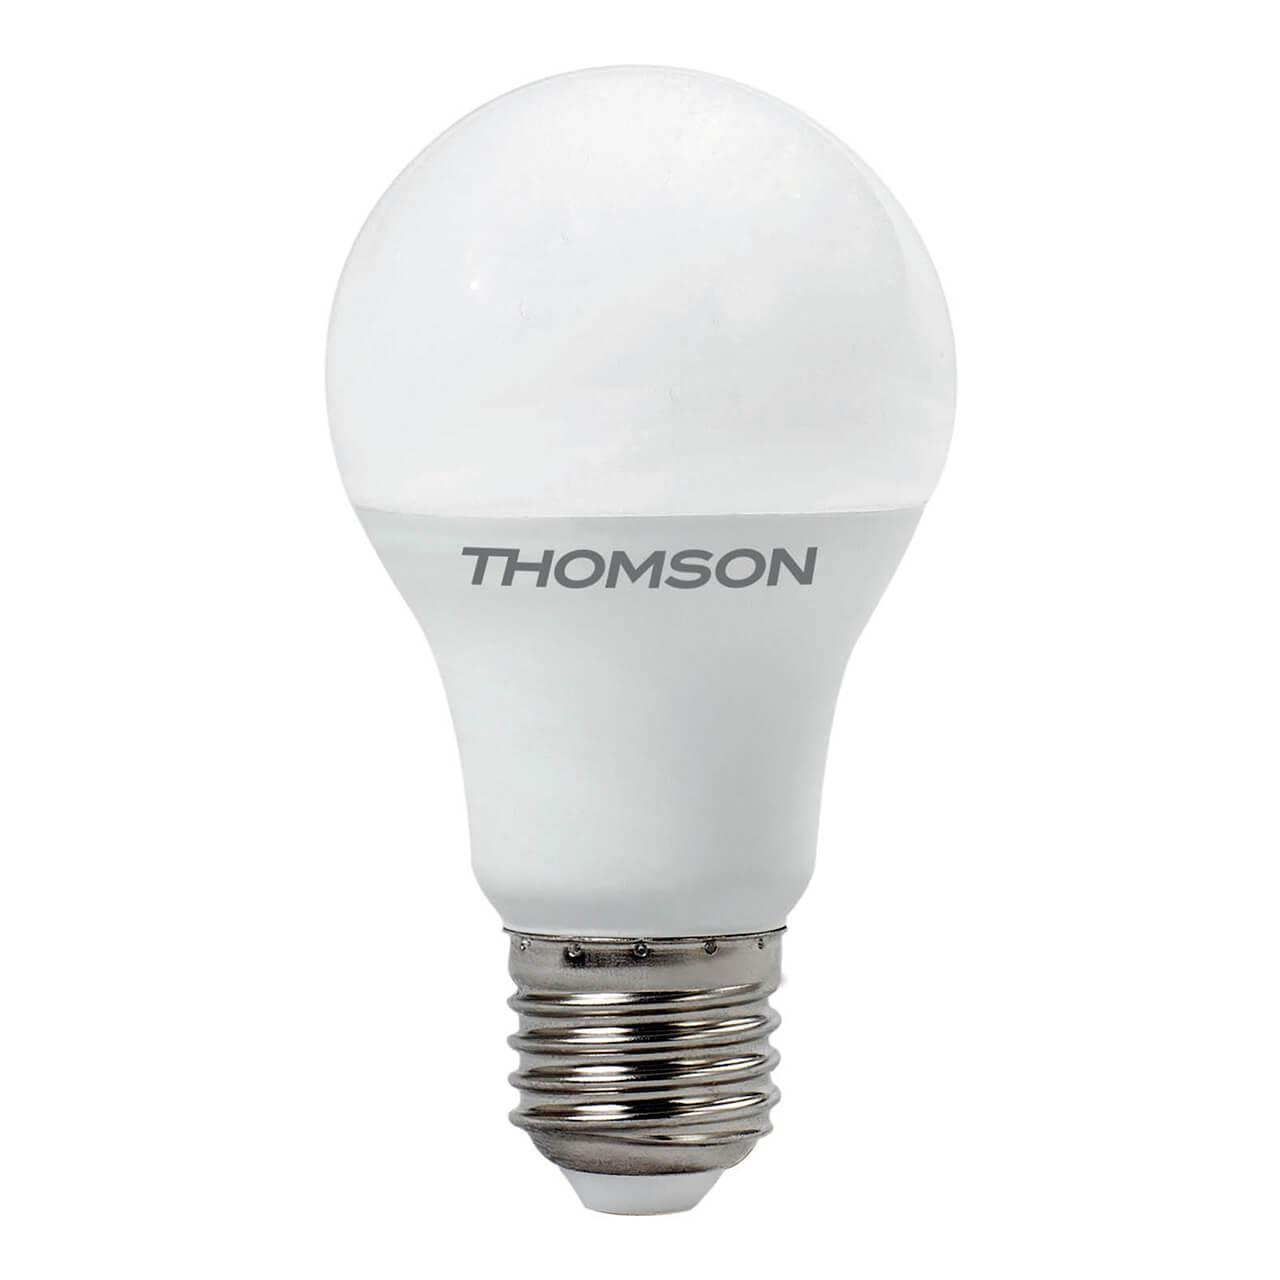 TH-B2005 Лампа светодиодная E27 11W 3000K груша матовая Thomson